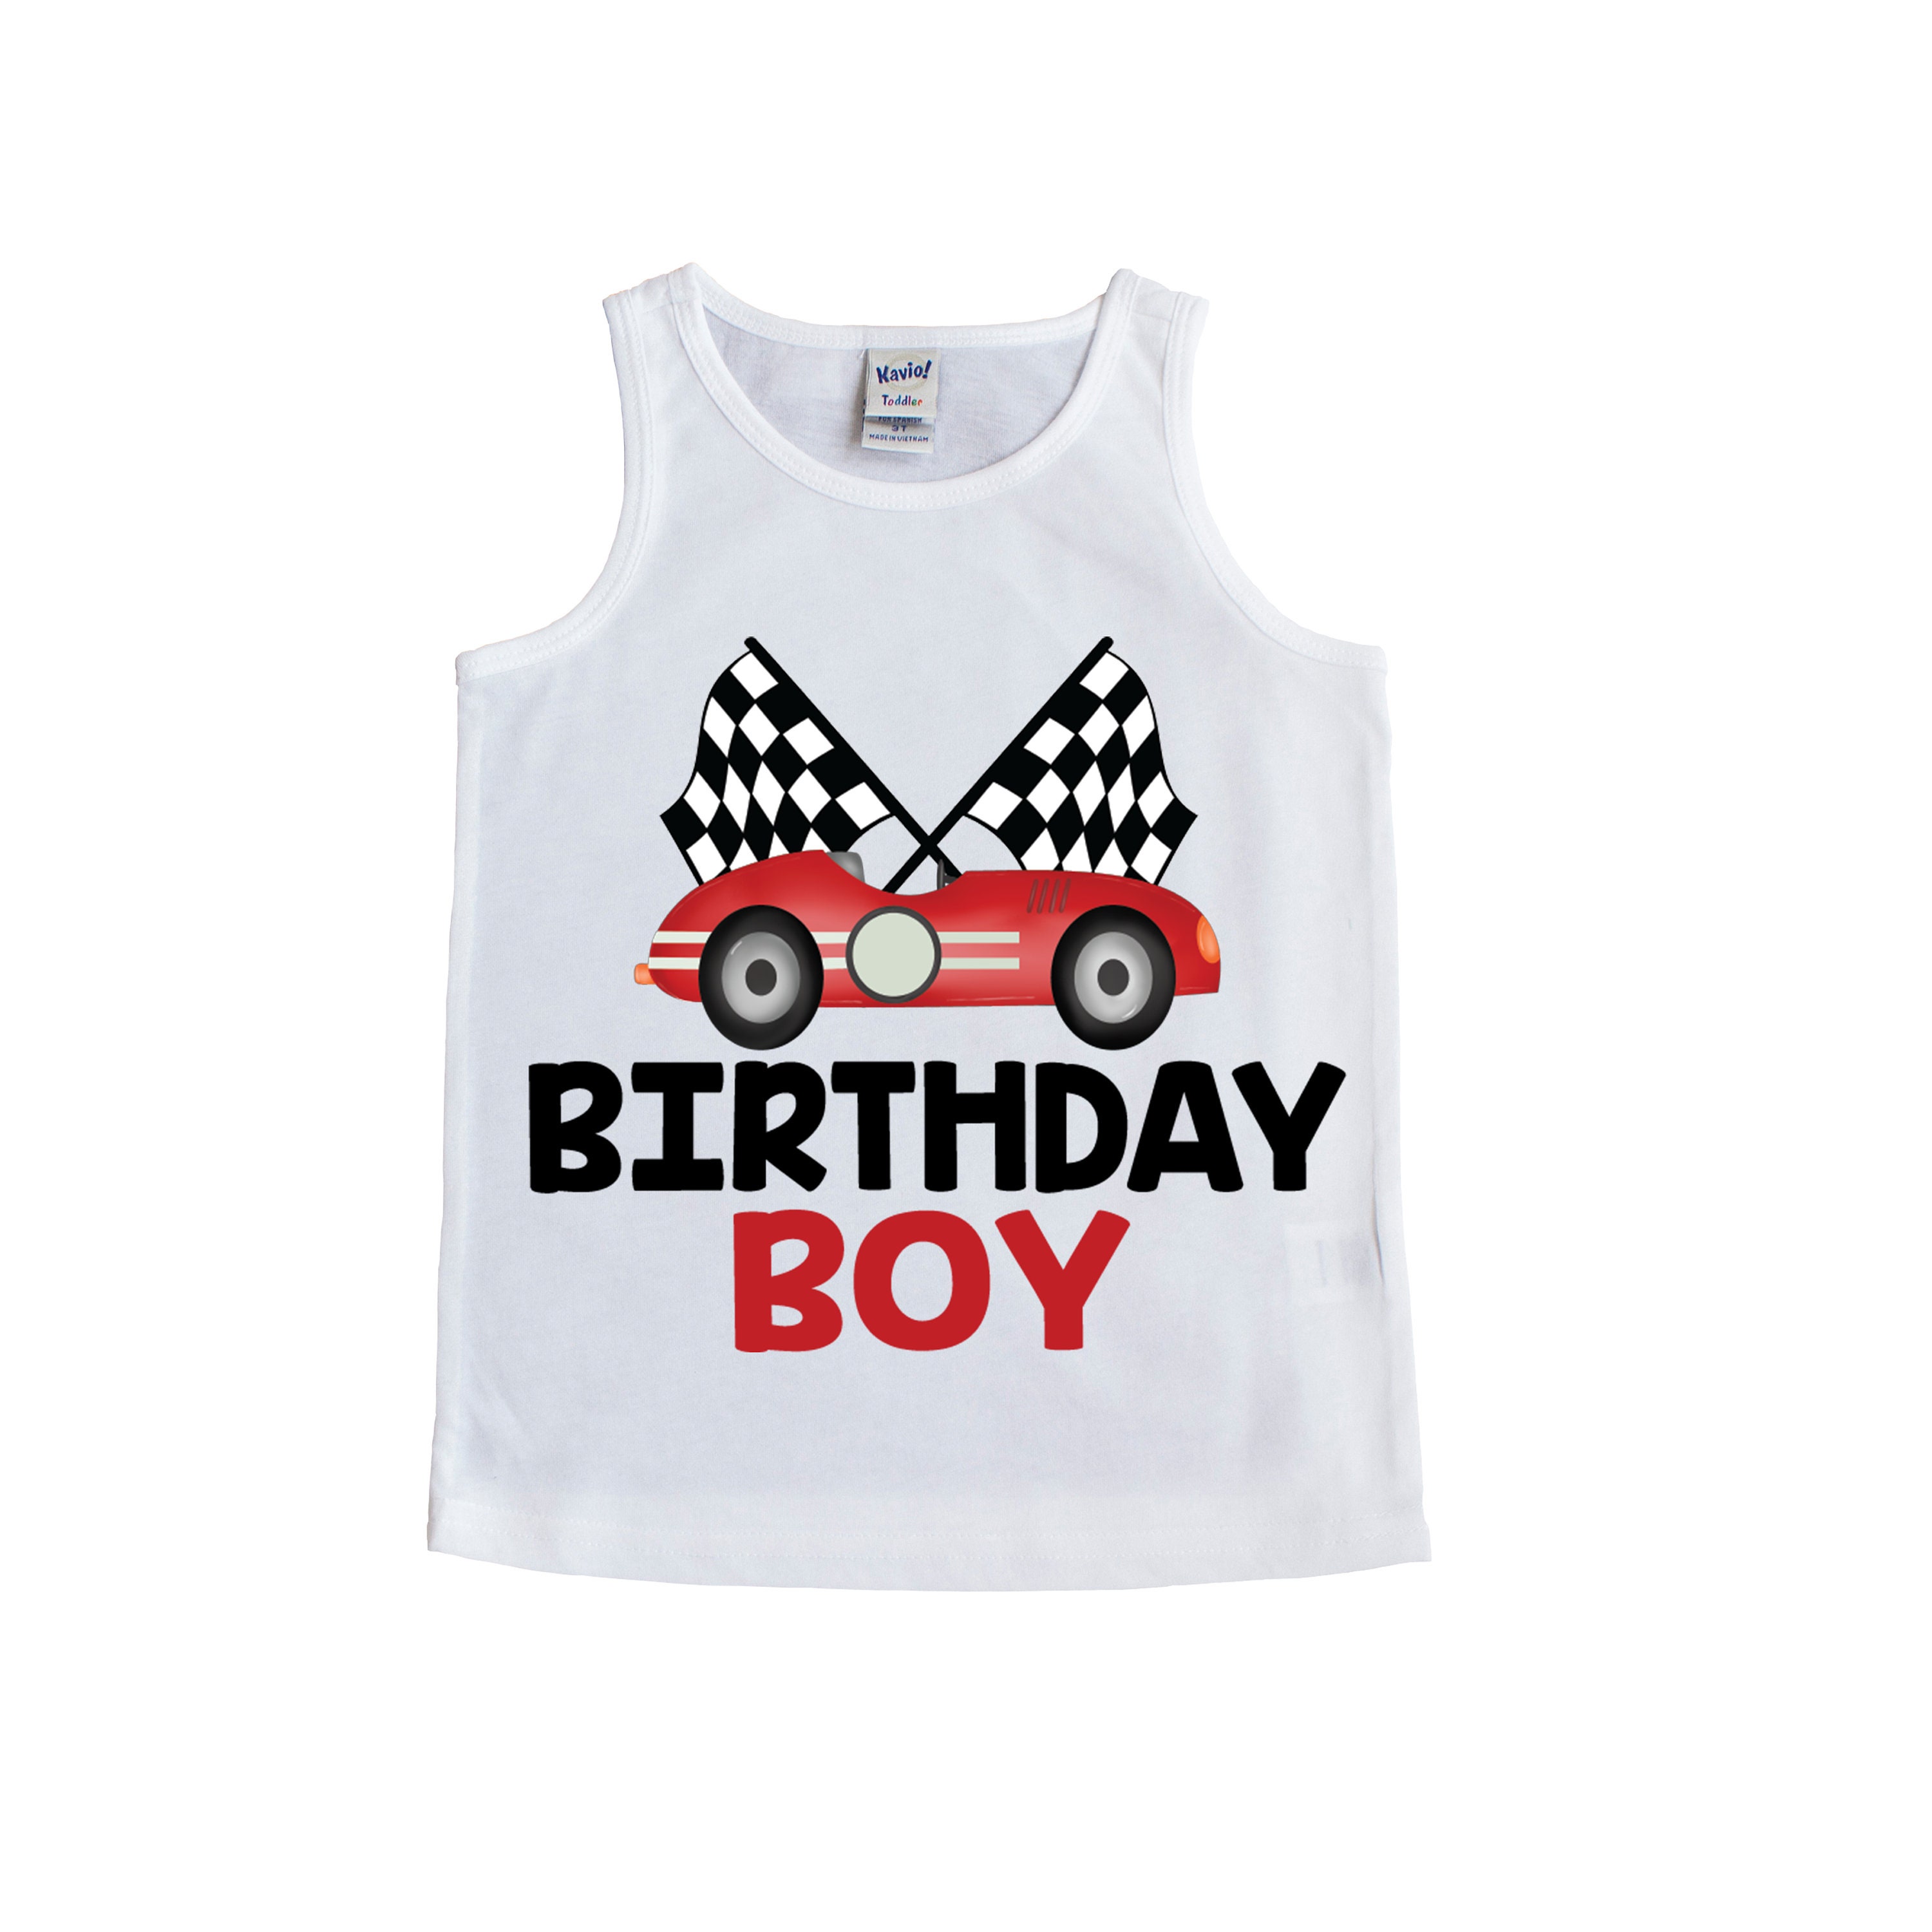 Race car boy birthday shirt racecar birthday birthday boy | Etsy